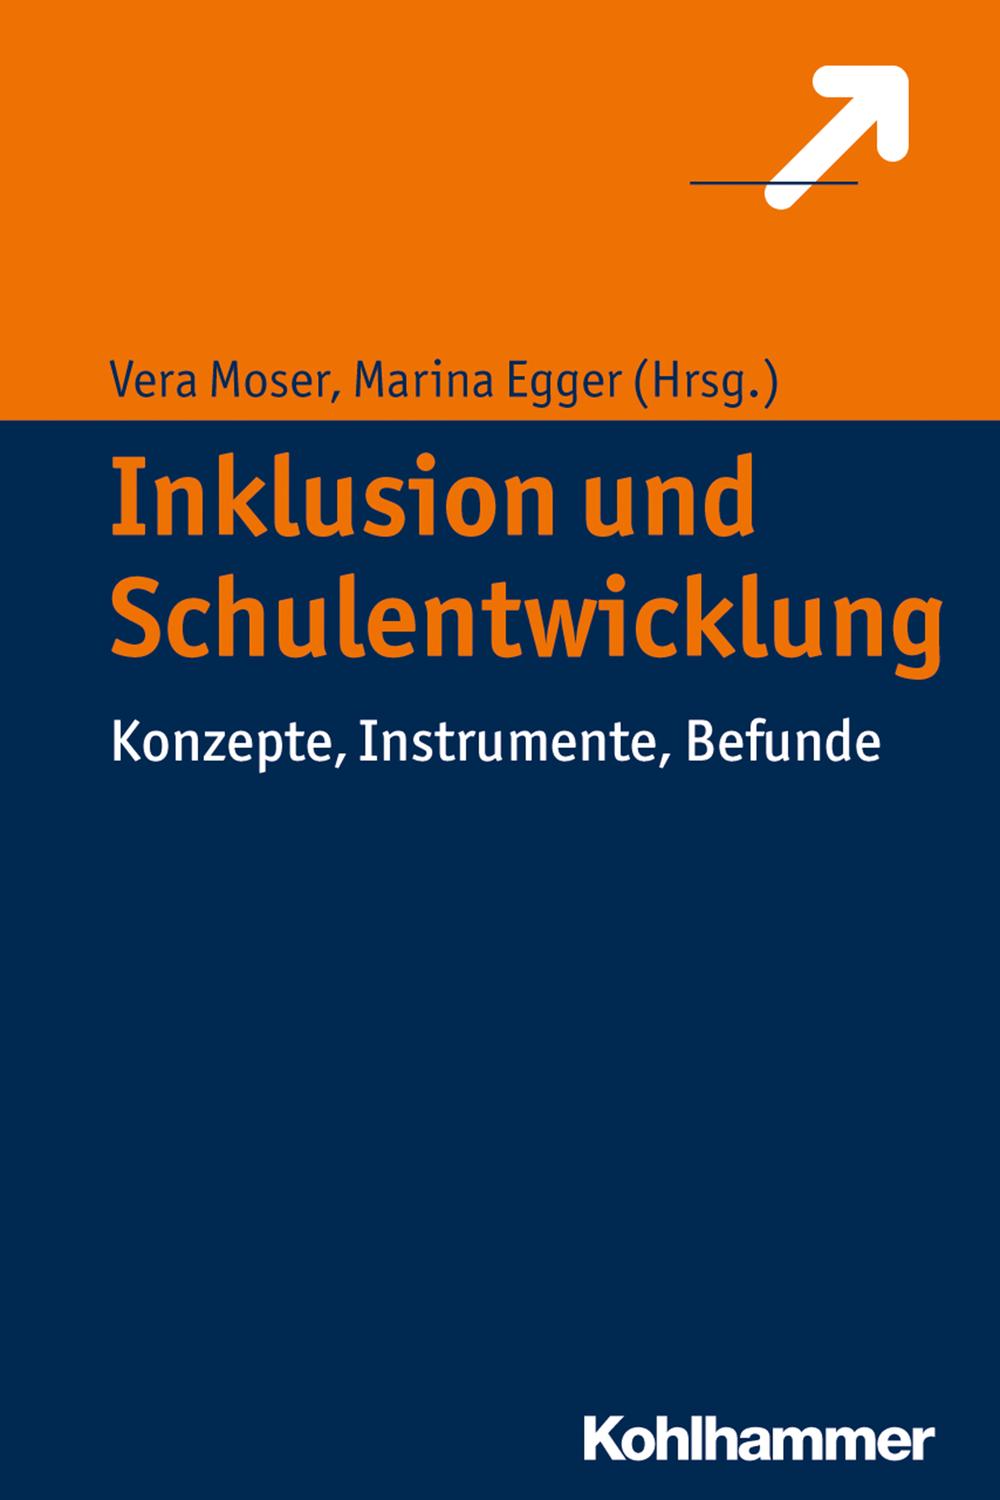 Inklusion und Schulentwicklung - Vera Moser, Marina Egger